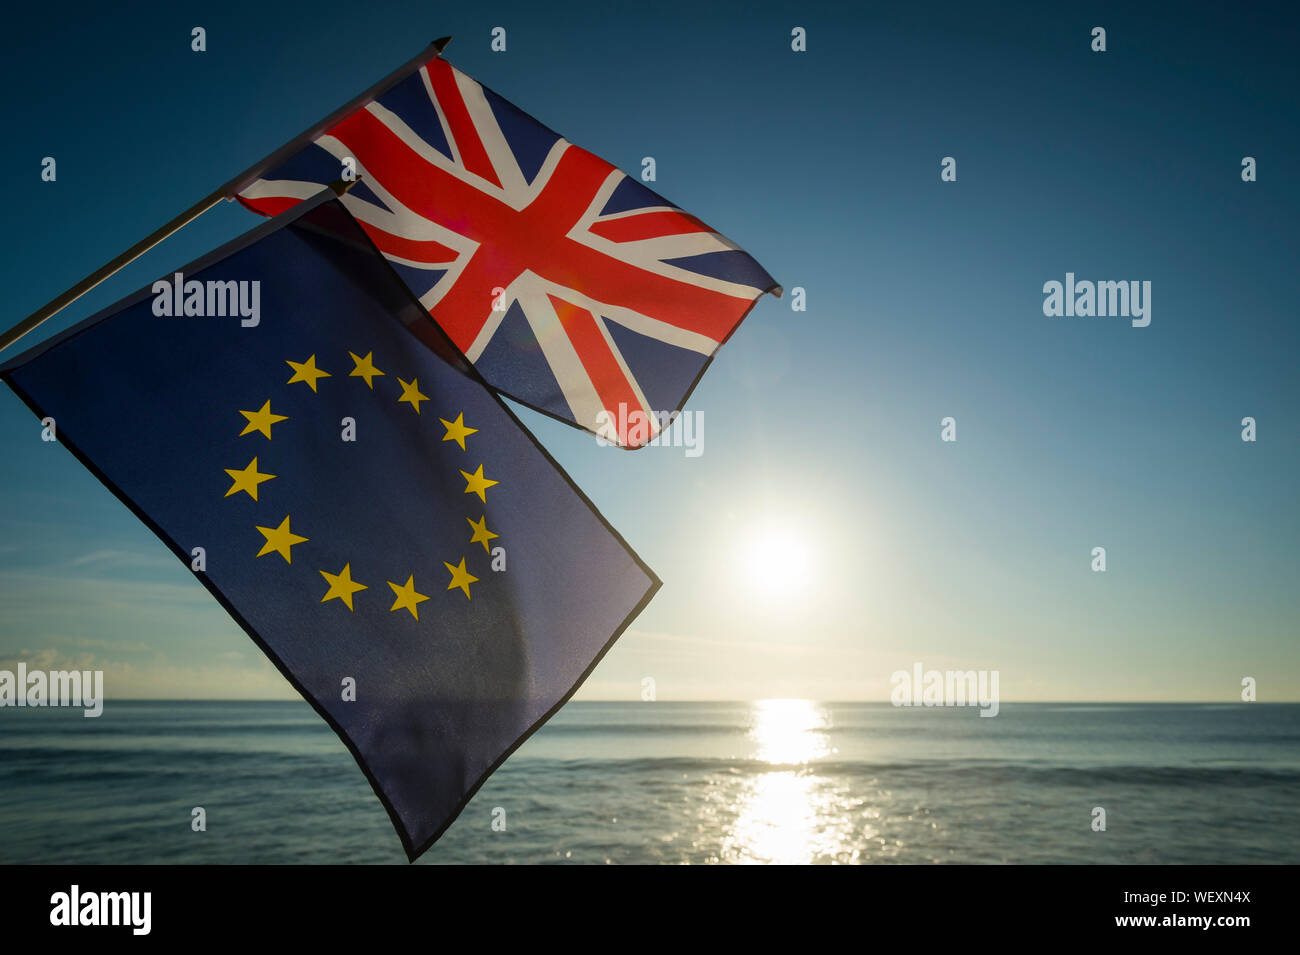 Europäischen Union und der britische Union Jack Fahnen fliegen zusammen wie die Sonne erhebt sich auf eine neue Ära in der Beziehung zwischen der EU und Großbritannien nach Brexit Stockfoto